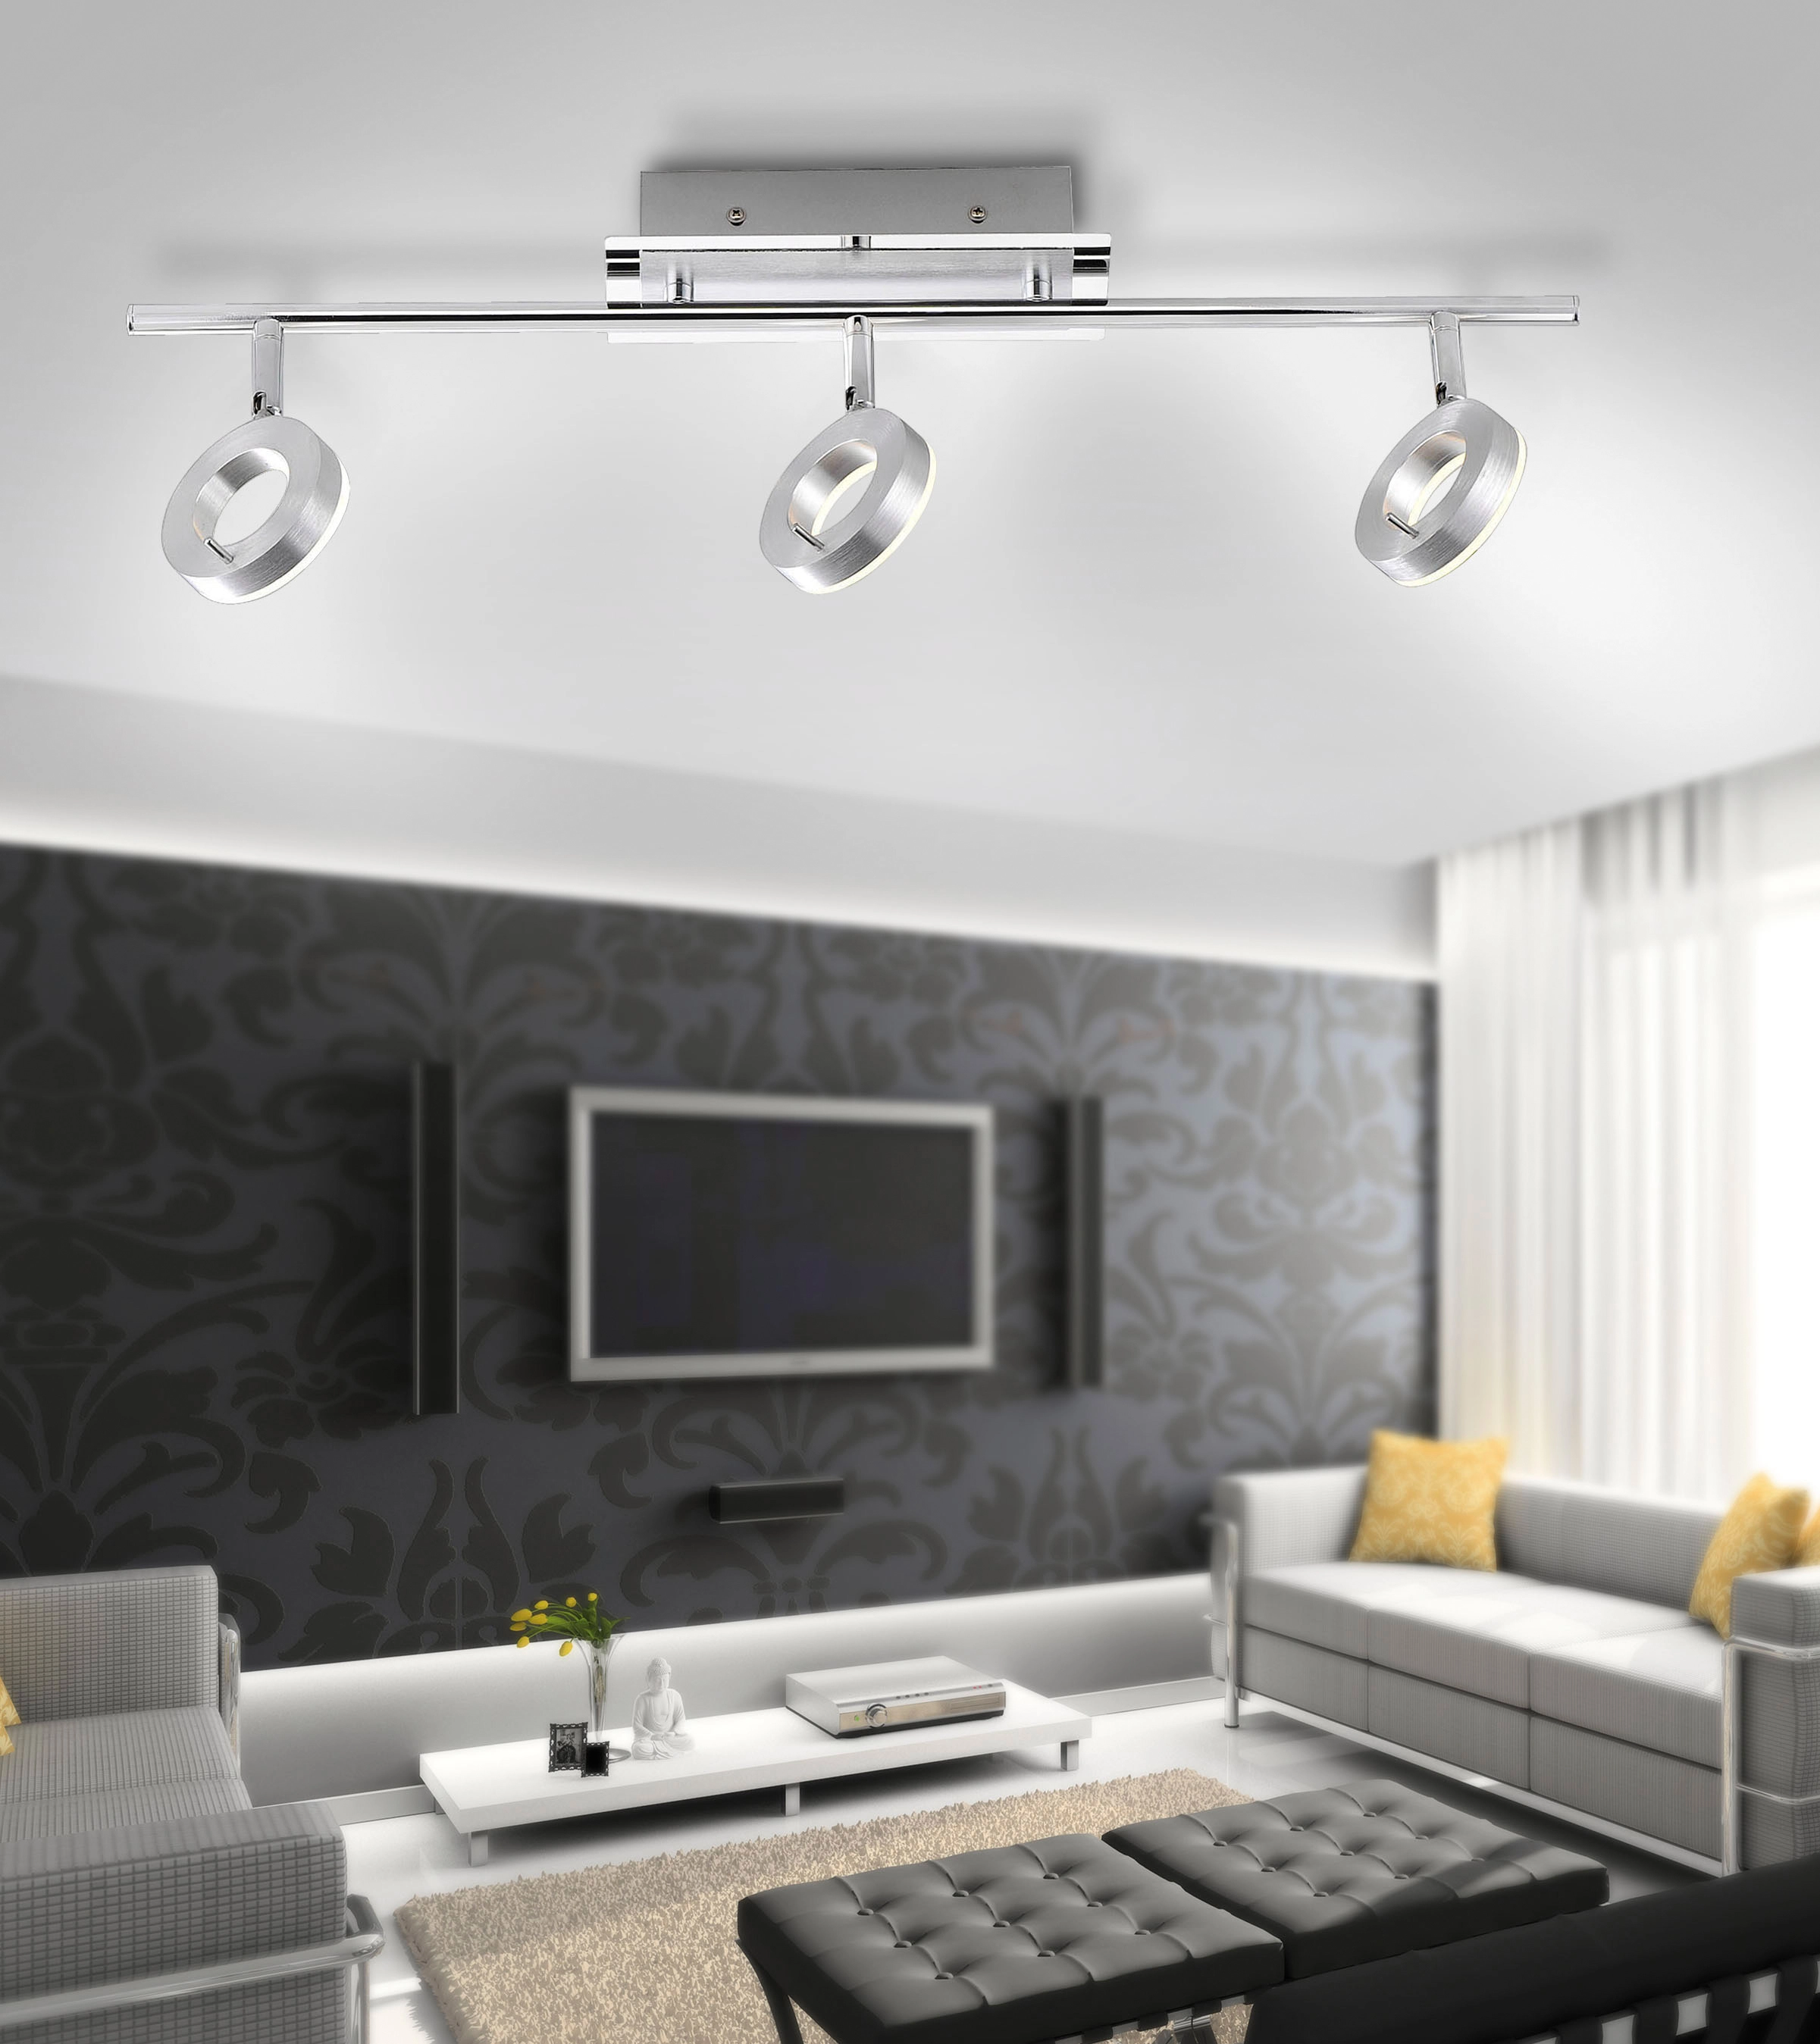 Paul Neuhaus LED-Deckenleuchte Sileda kaufen bei OBI